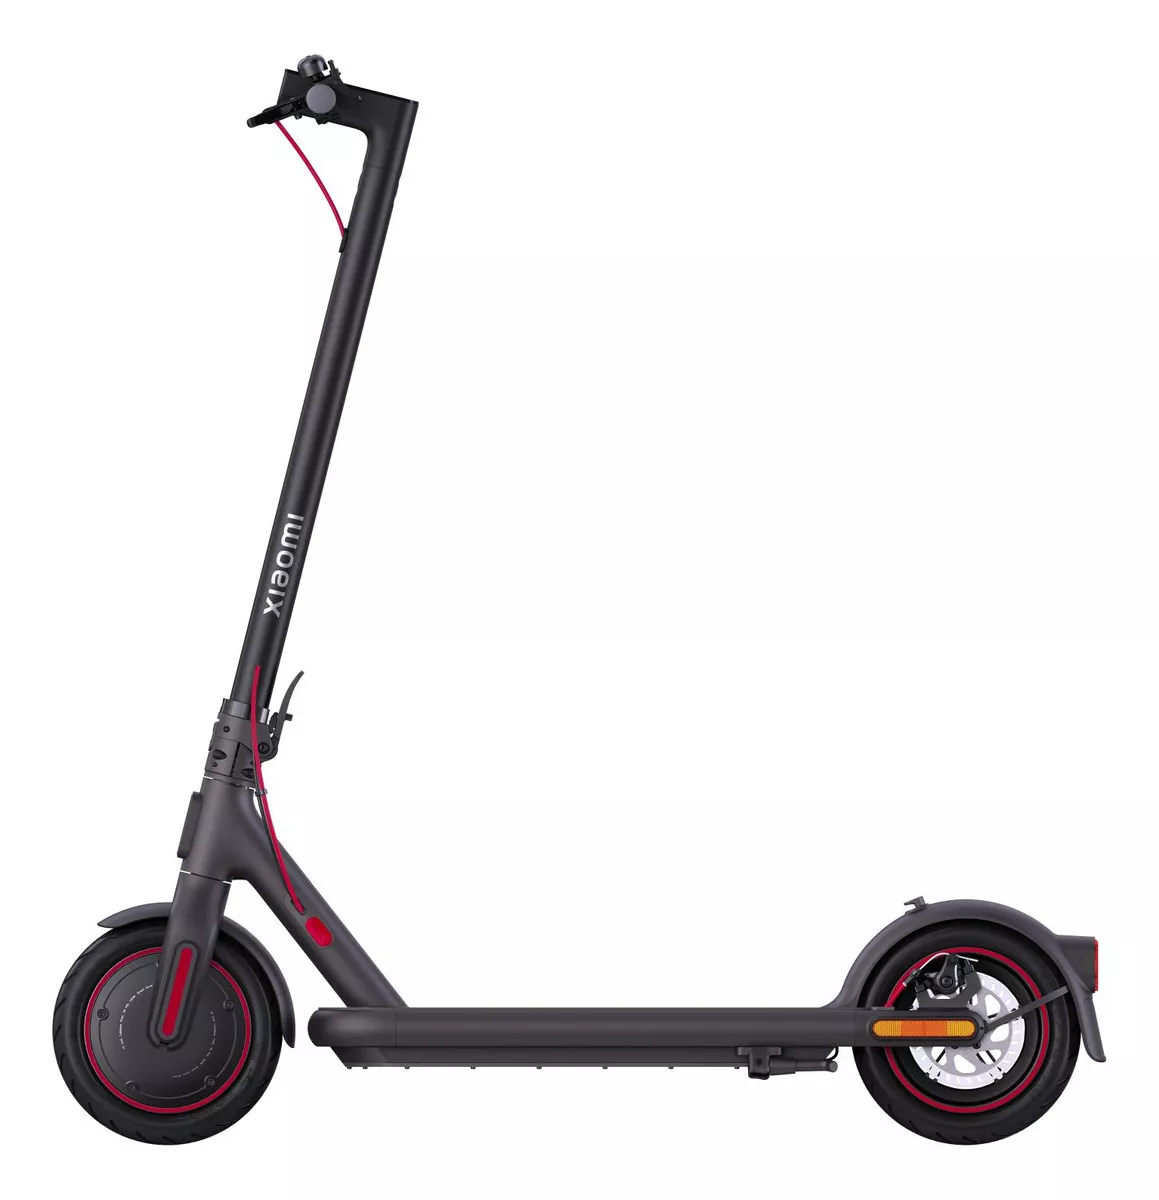 Primera imagen para búsqueda de scooter electrico xiaomi